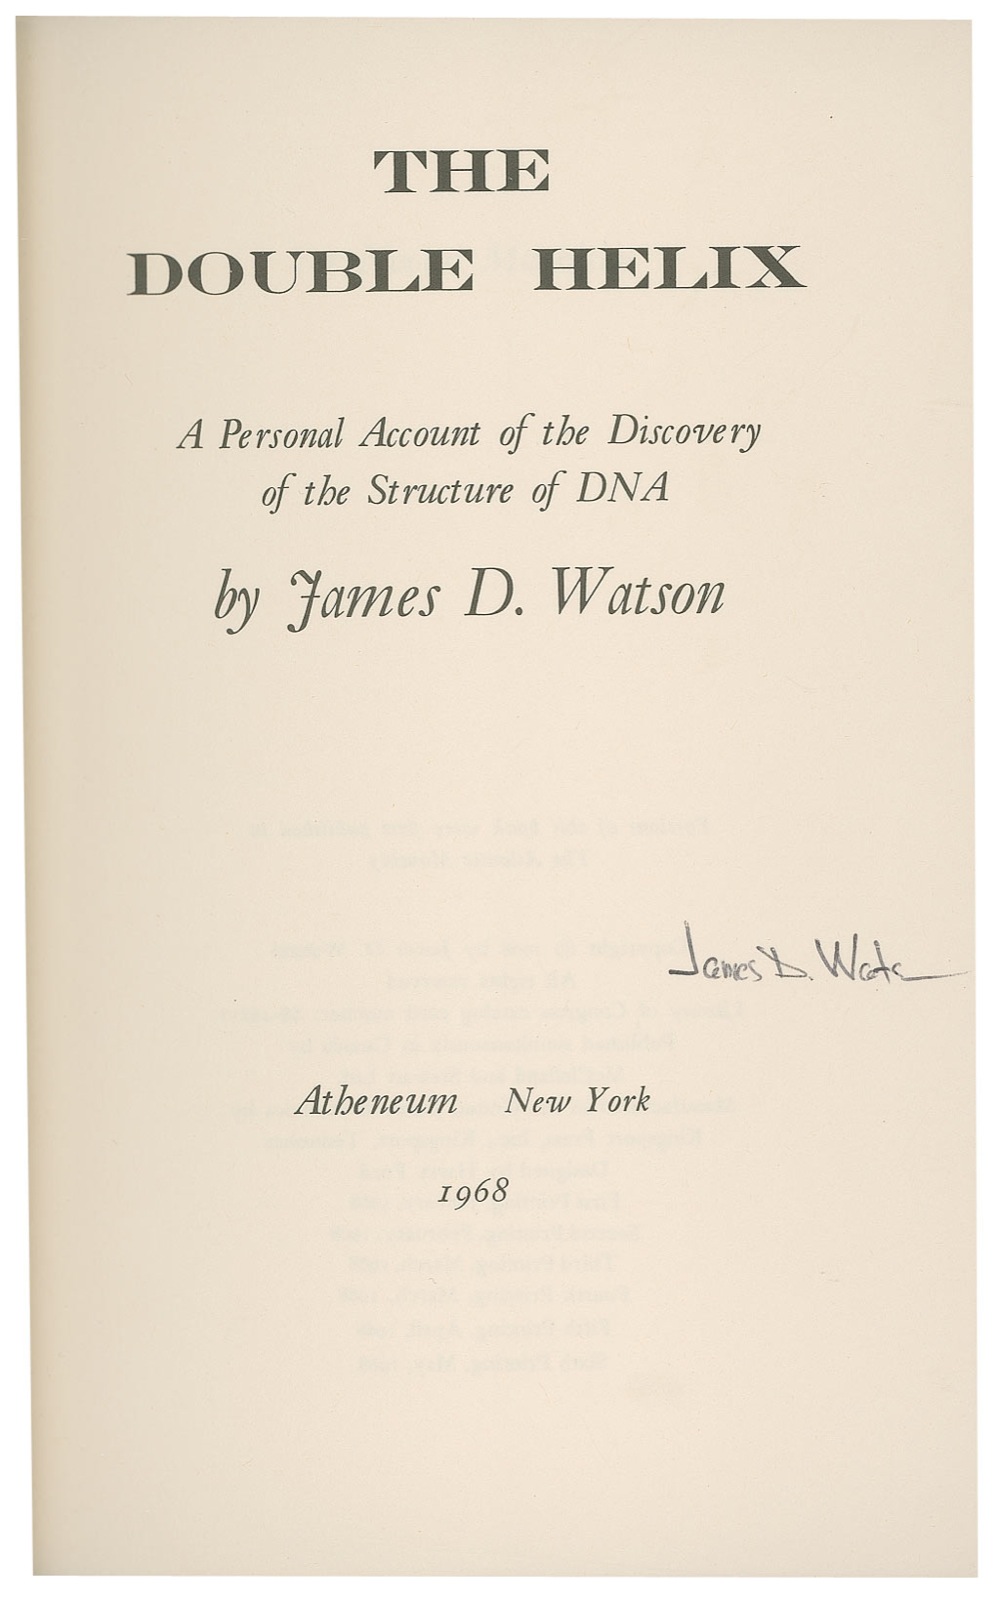 Lot #241 DNA: James D. Watson